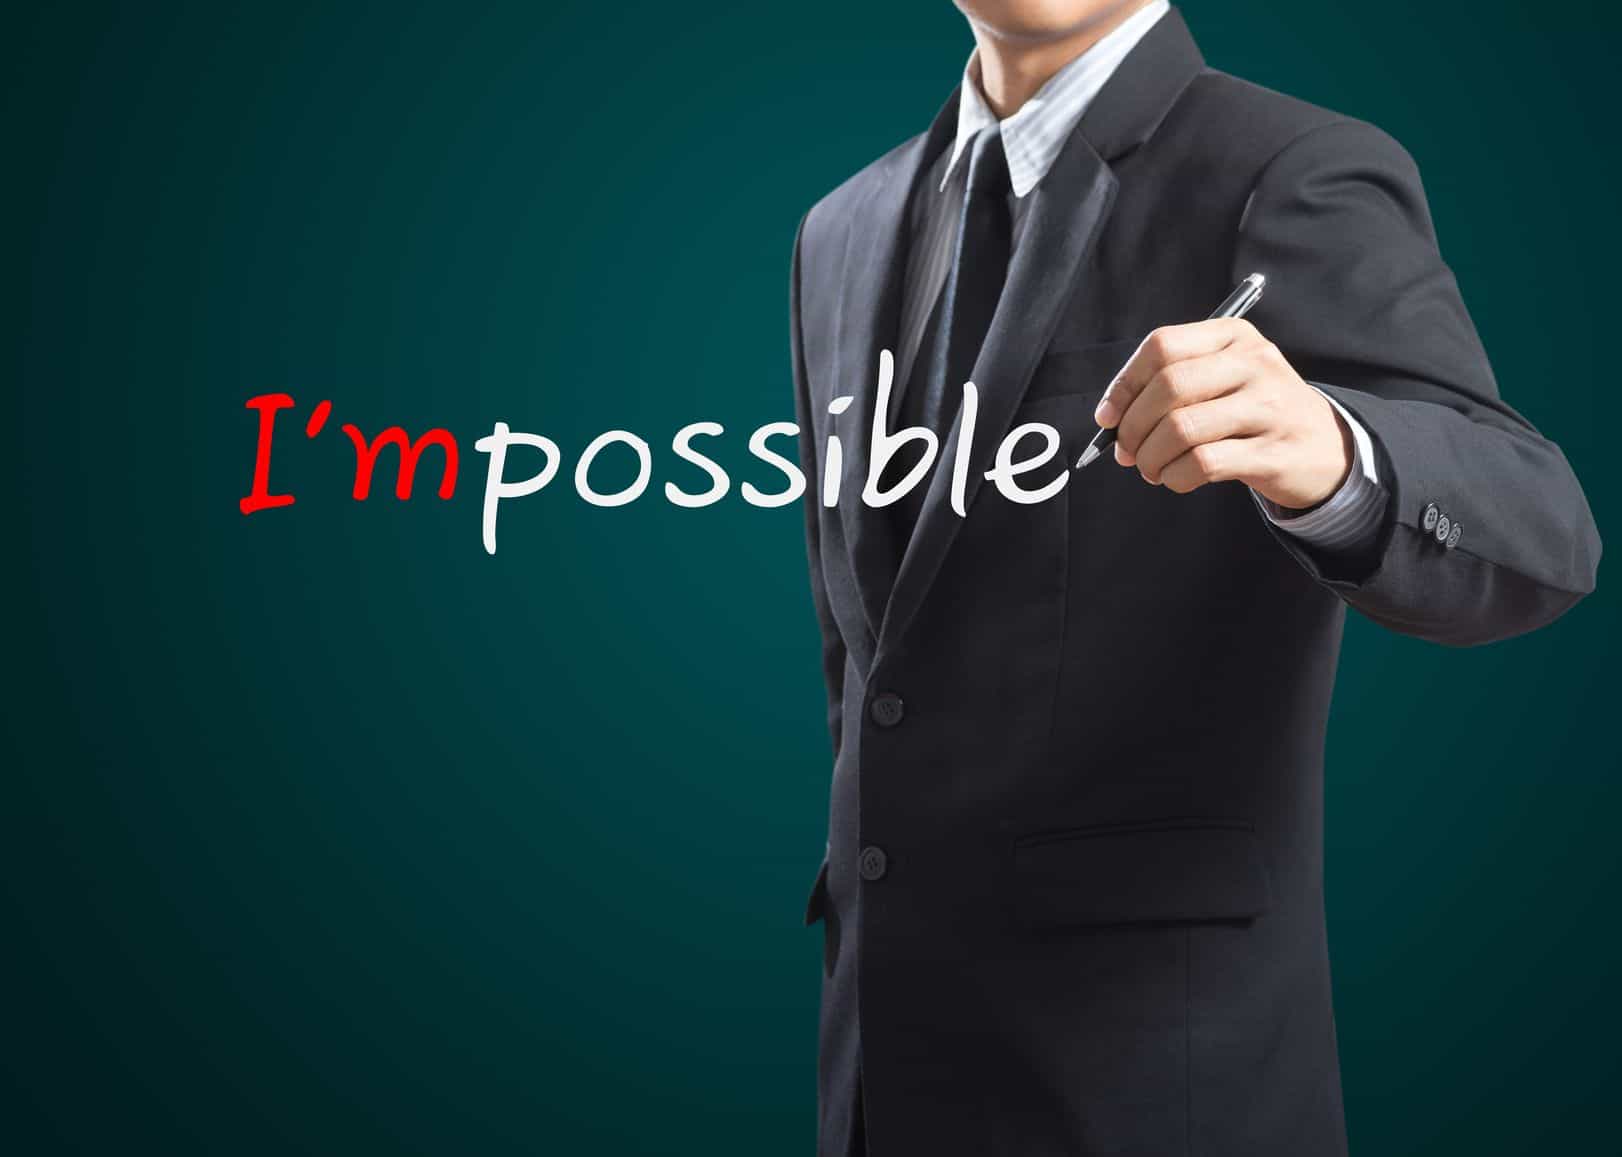 איך להפוך את הבלתי אפשרי לאפשרי